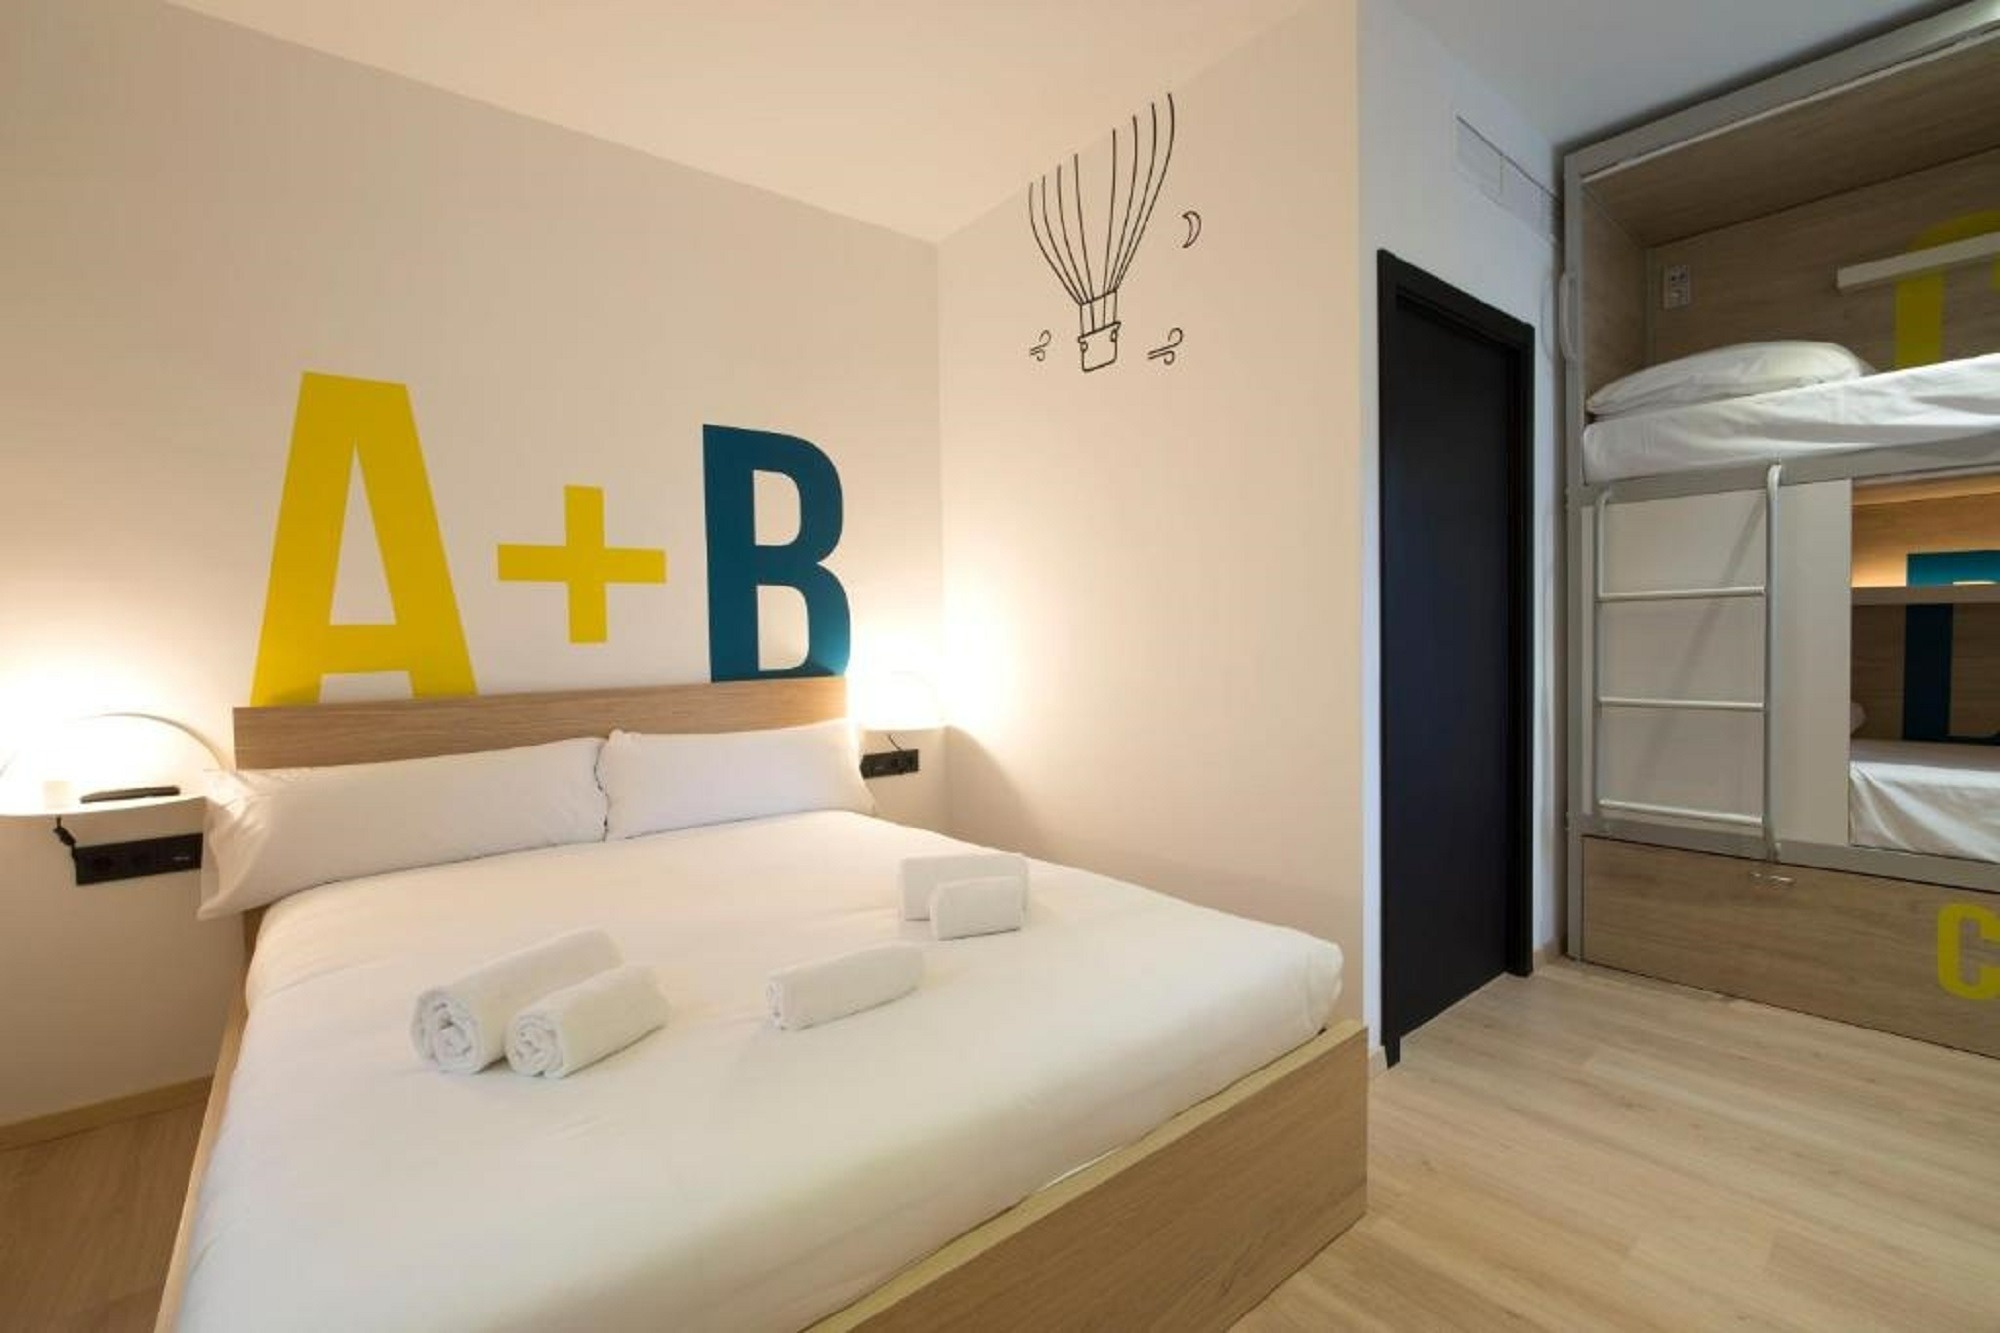 una habitación con una cama y una litera con las letras a + b pintadas en la pared